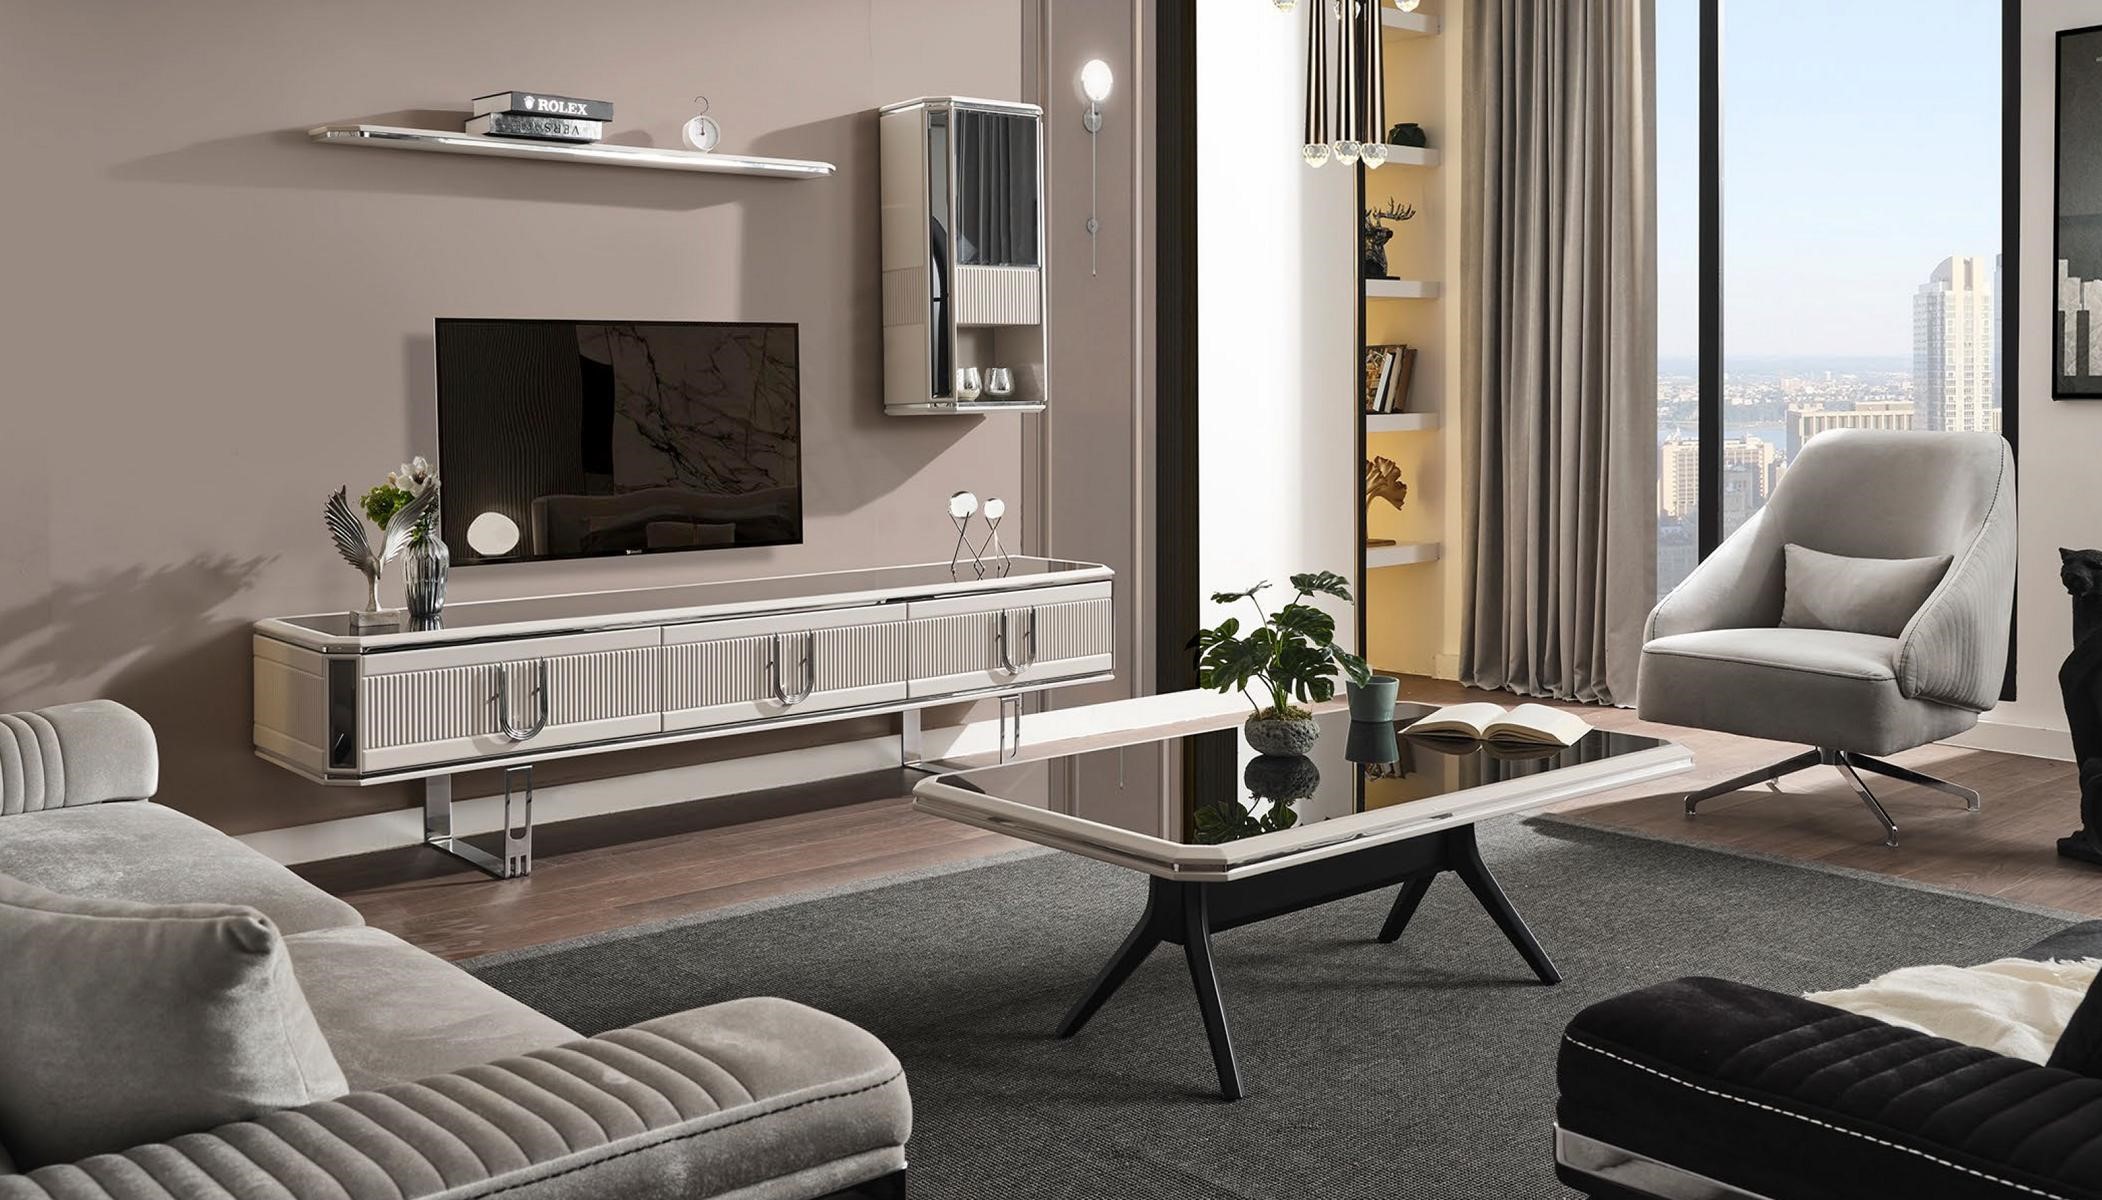 Luxus tv Ständer rtv sideboard Couchtisch Wohnwand Wohnzimmer Holz Regal